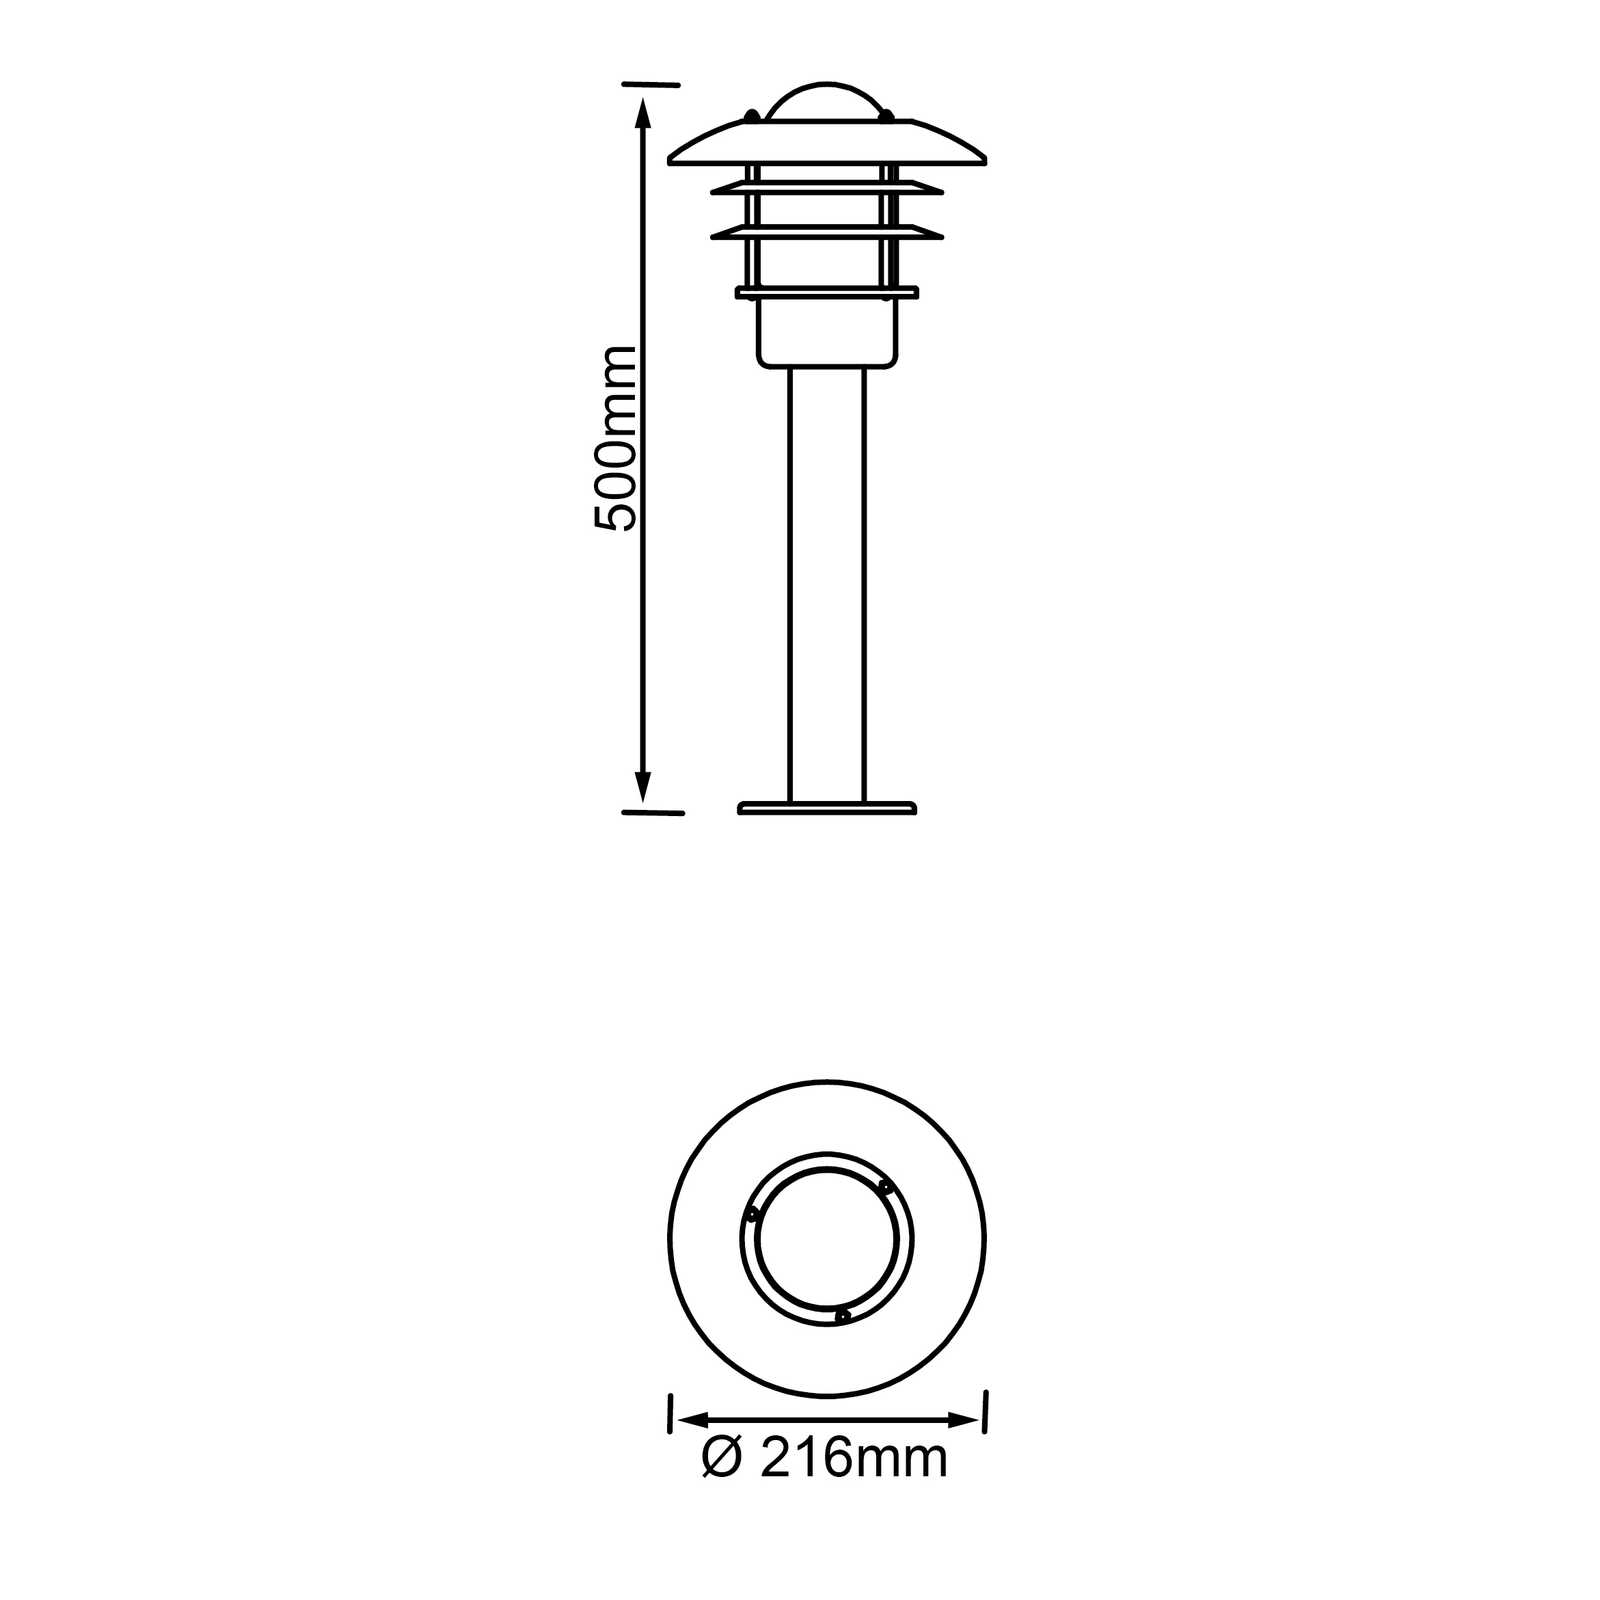             Lámpara de zócalo metálica para exterior - Pepe 1 - Metálica
        